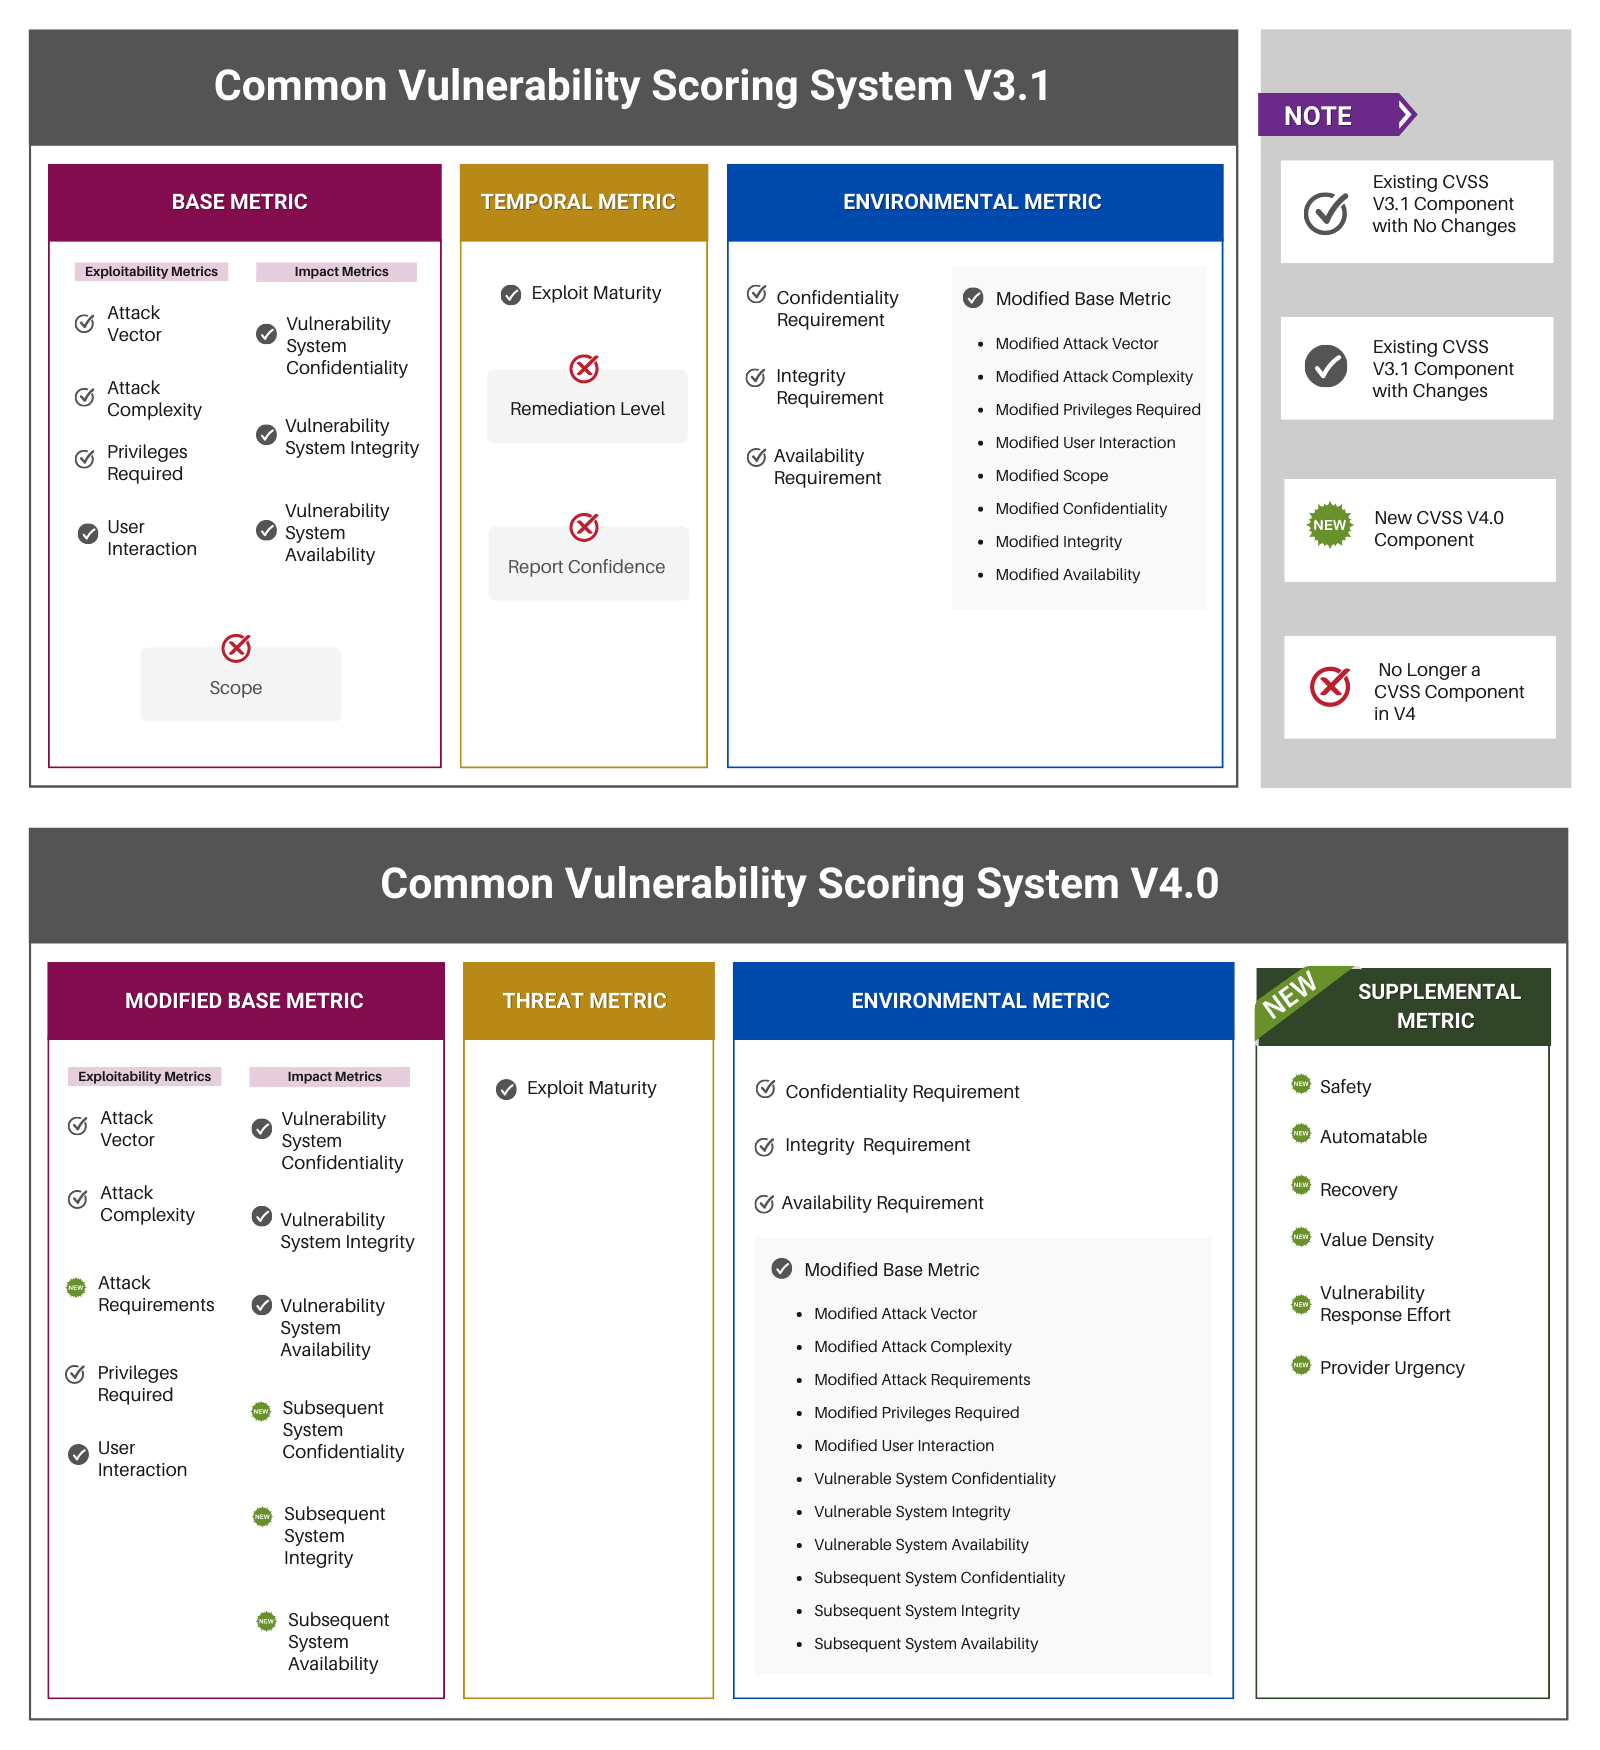 Comparison between CVSS V3.1 and V4.0